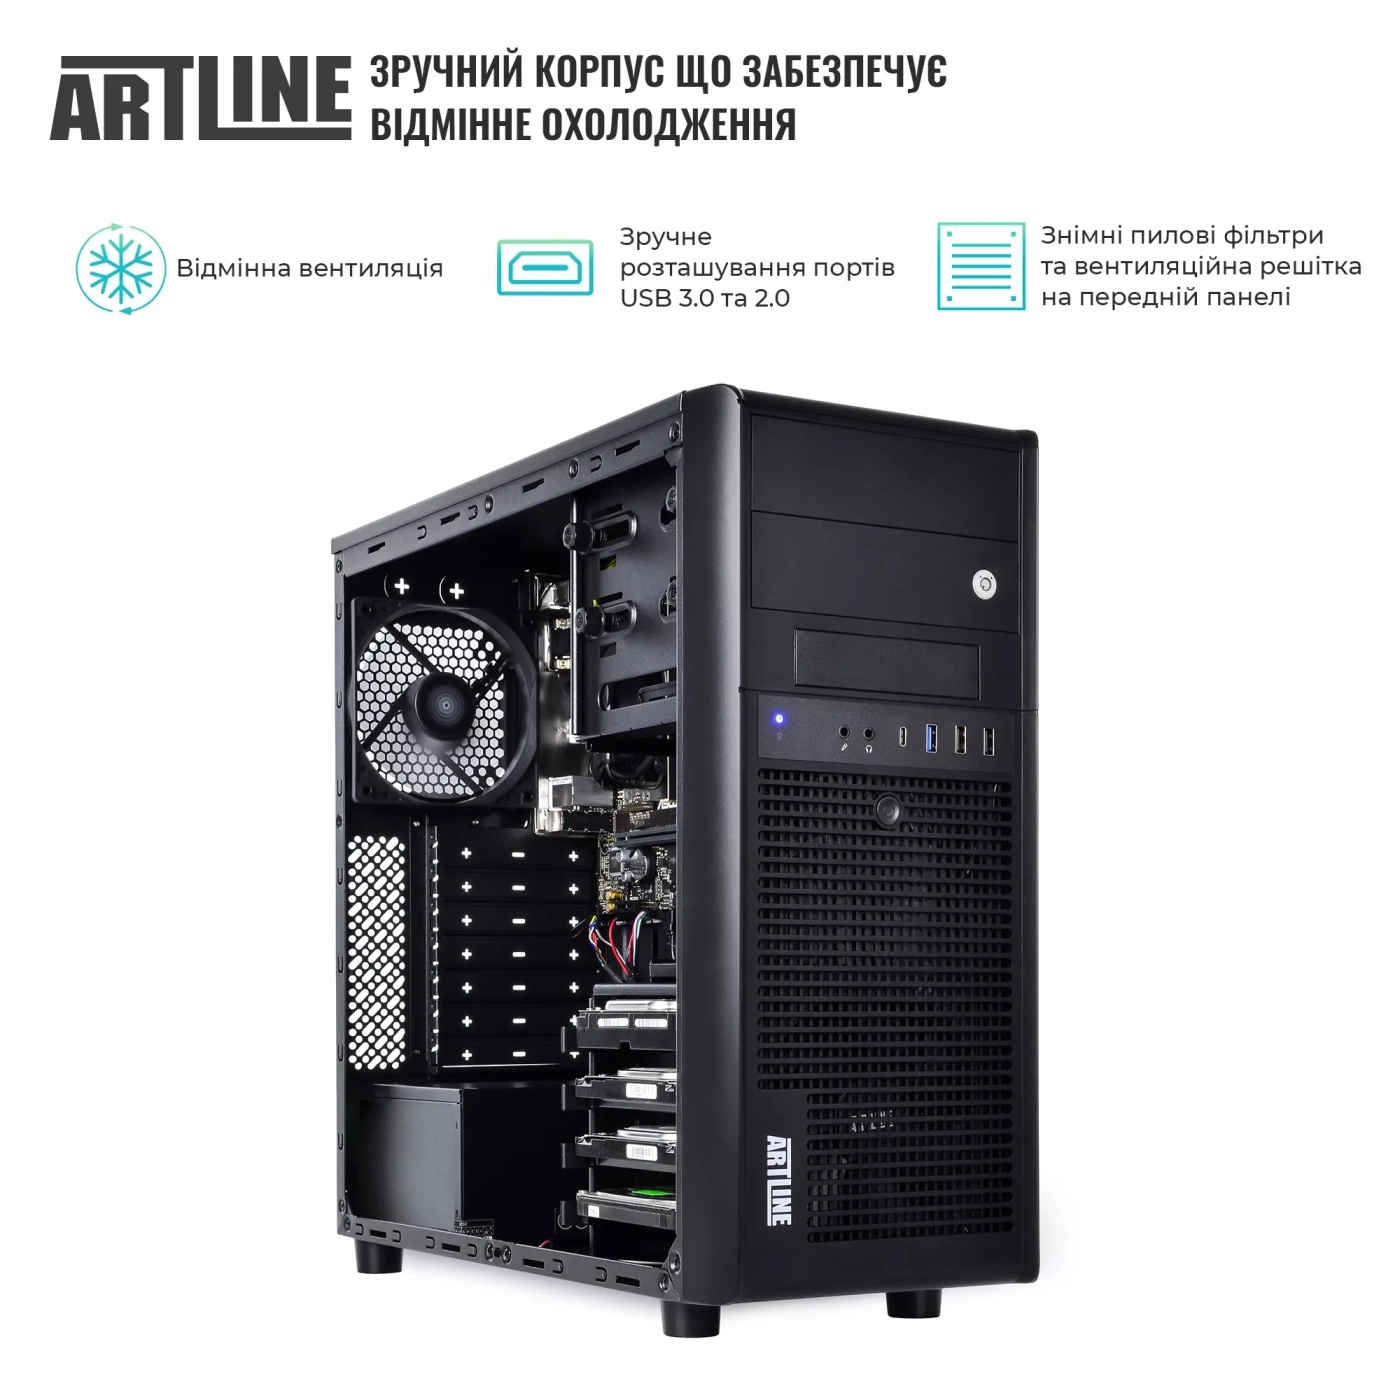 Купить Сервер ARTLINE Business T38 (T38v32) - фото 3